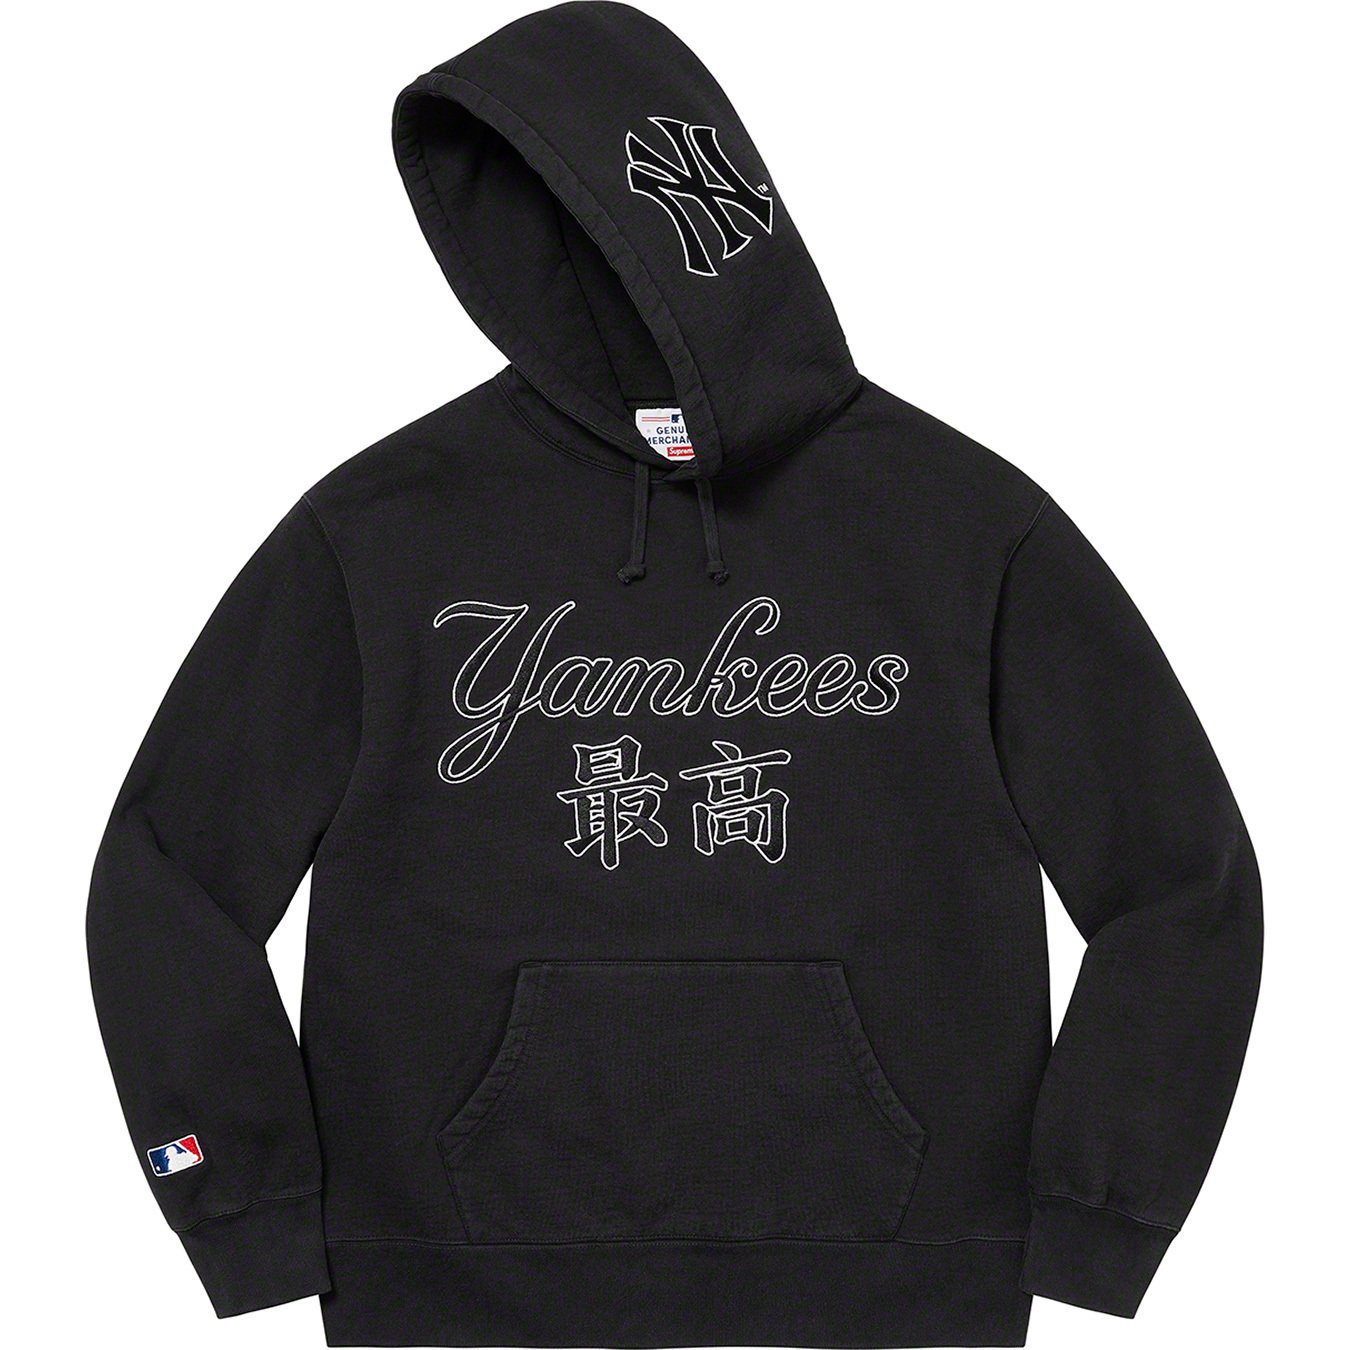 Polo Ralph Lauren Yankees hoodie- black